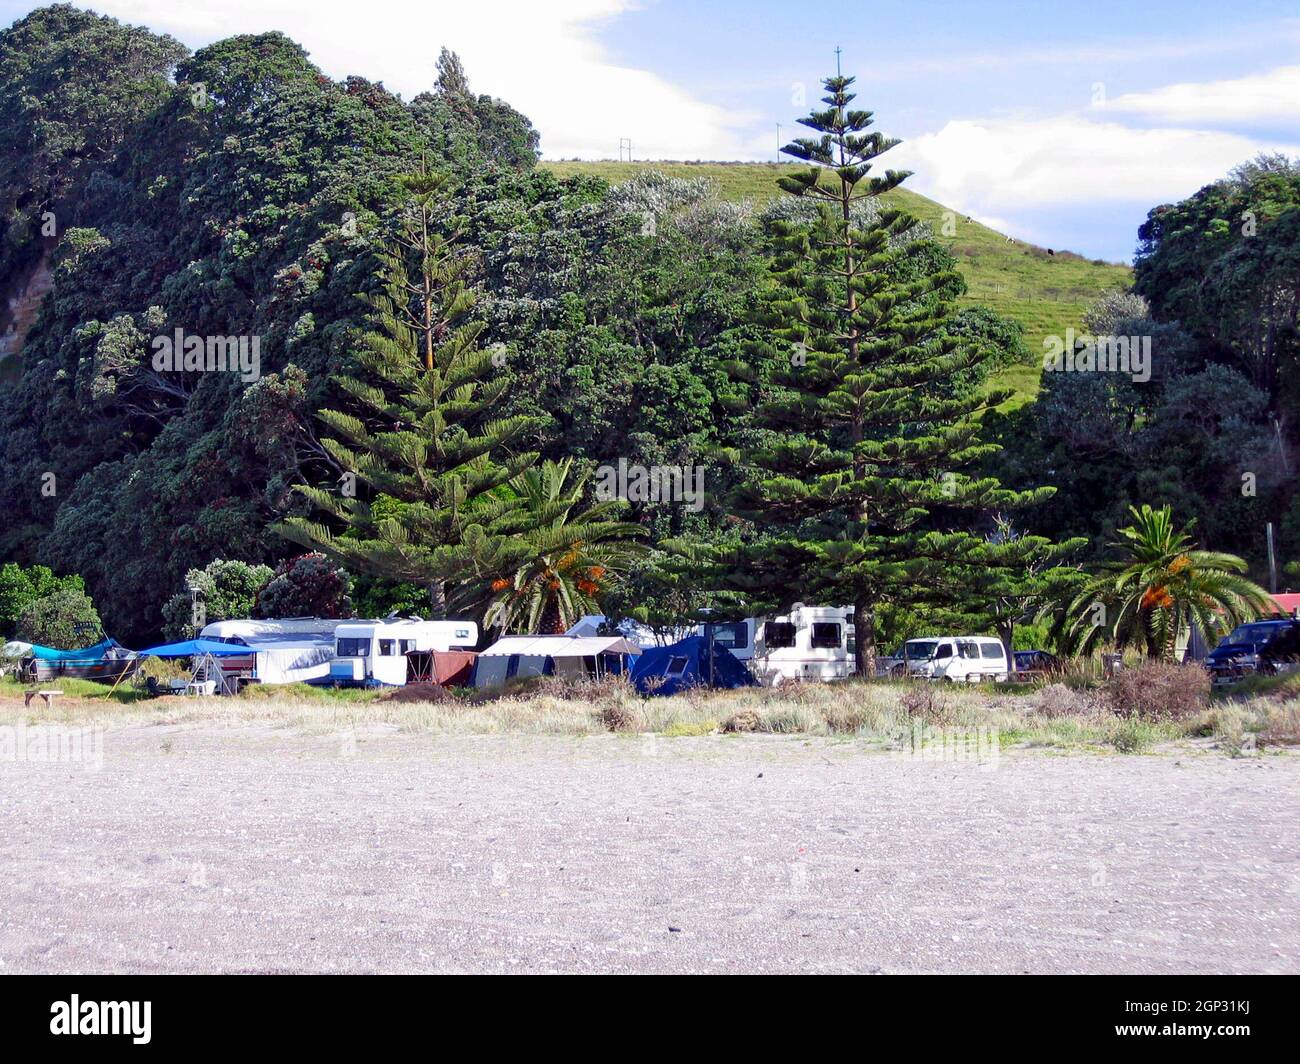 Les camping-cars et les tentes sur la plage le long de la rive est de l'île du Nord en Nouvelle-Zélande pendant les vacances de Noël est une tradition de vacances.Le camping à Noël est une tradition Kiwi soutenue par la capacité de camper librement dans tout le pays, connu comme le camping de liberté. Banque D'Images